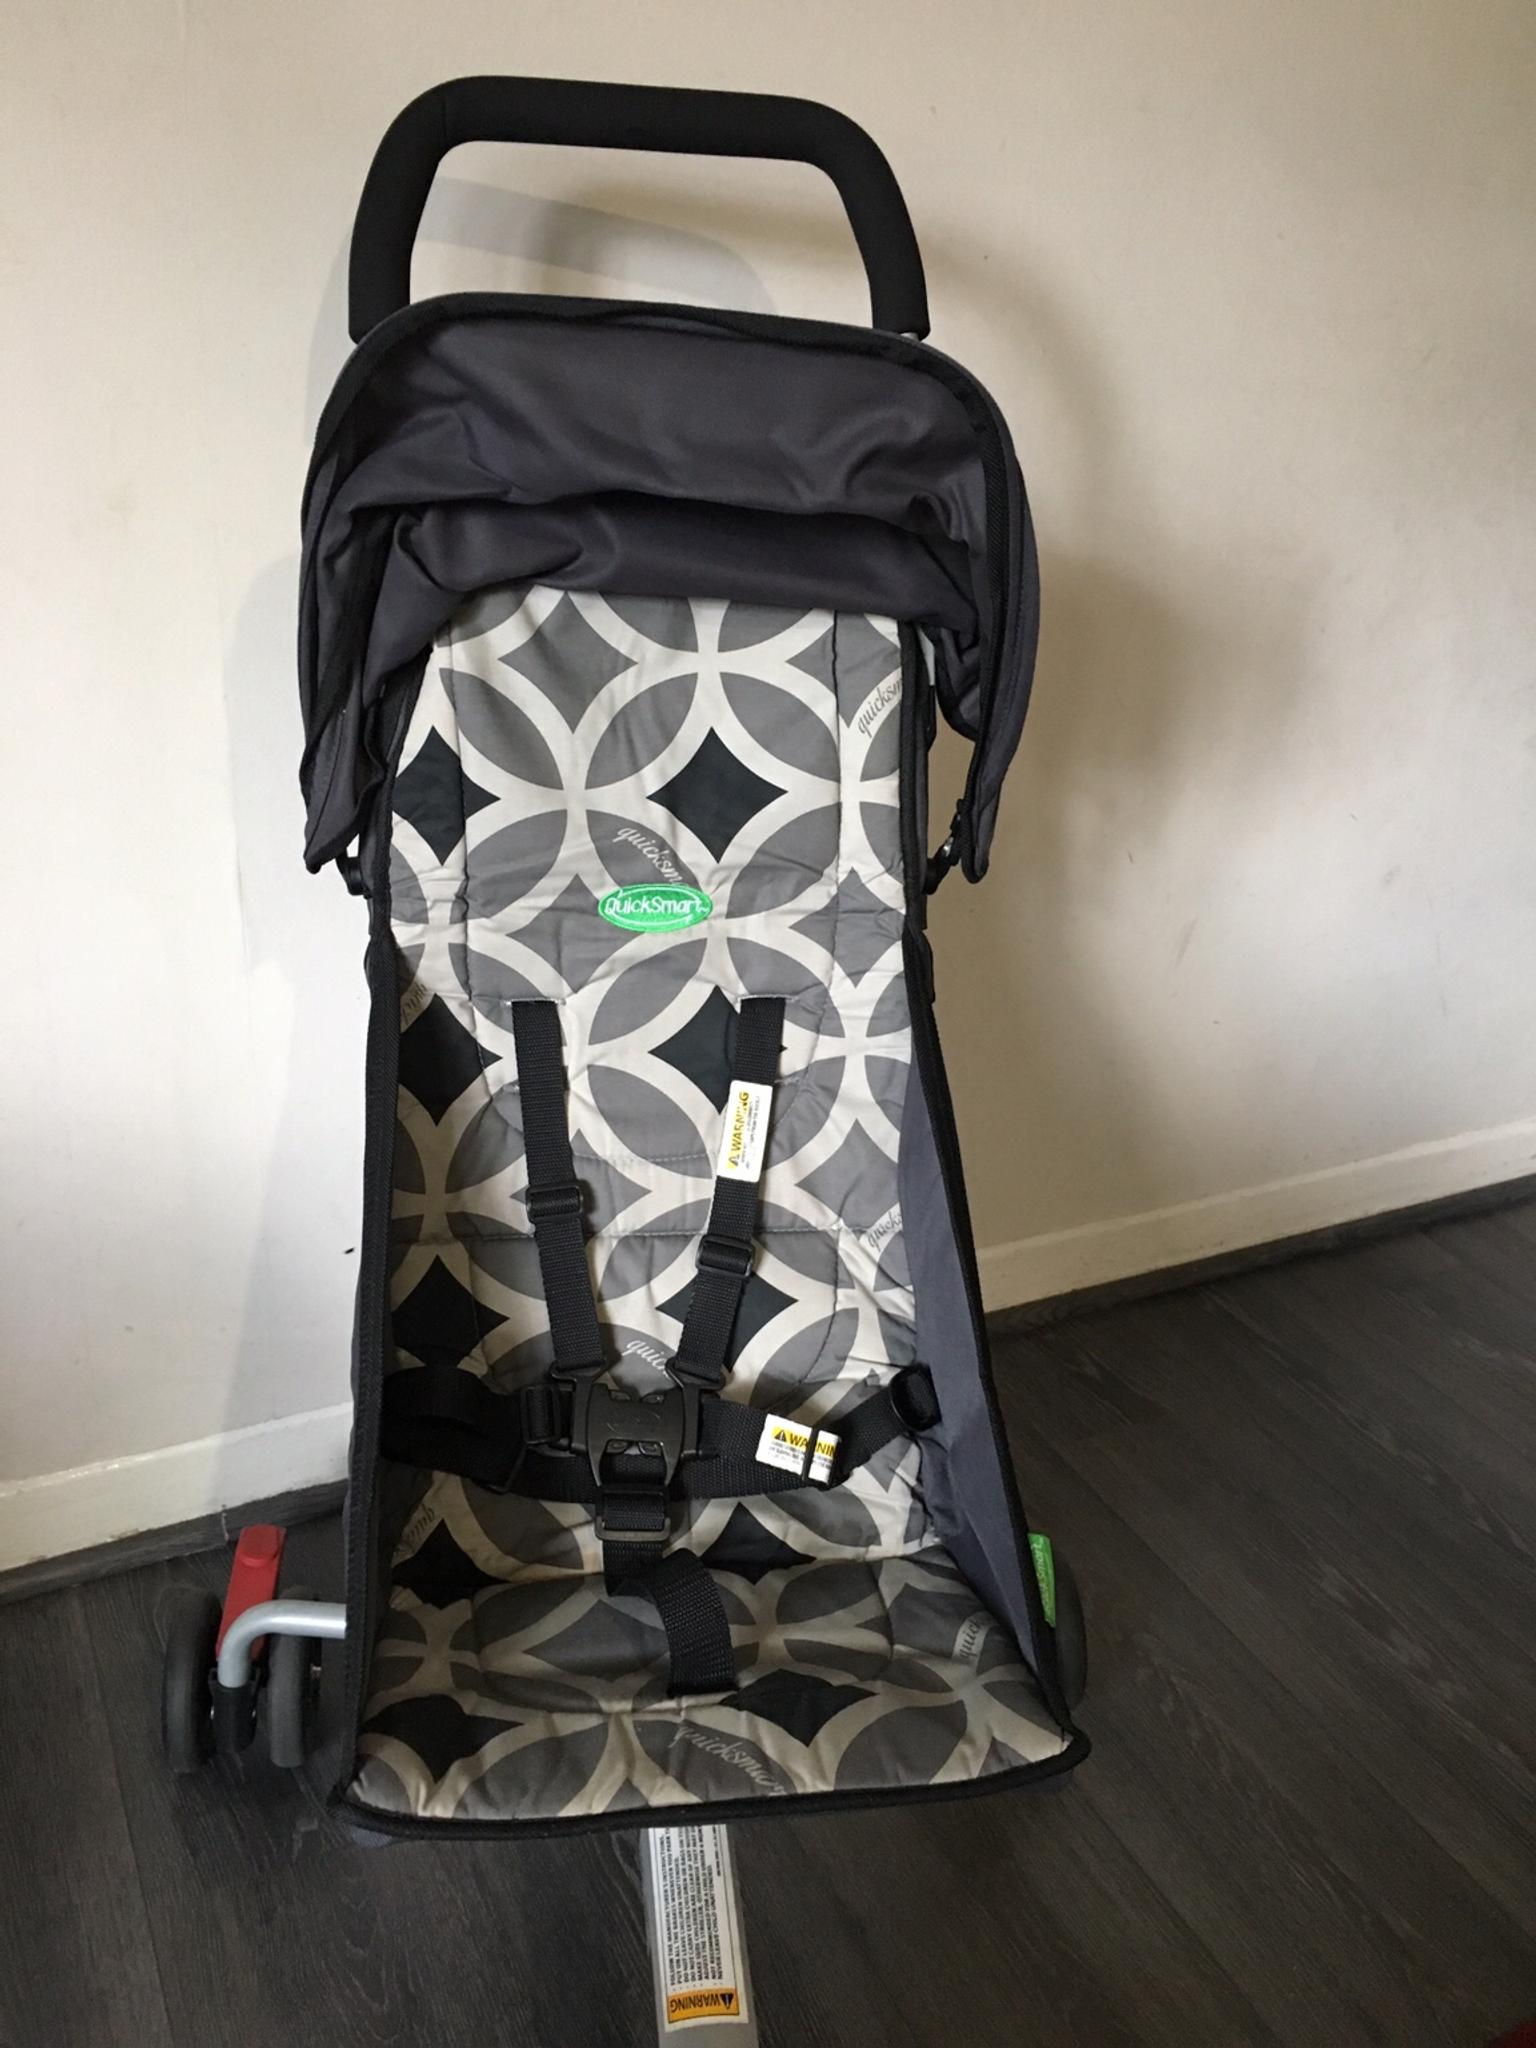 quicksmart backpack stroller